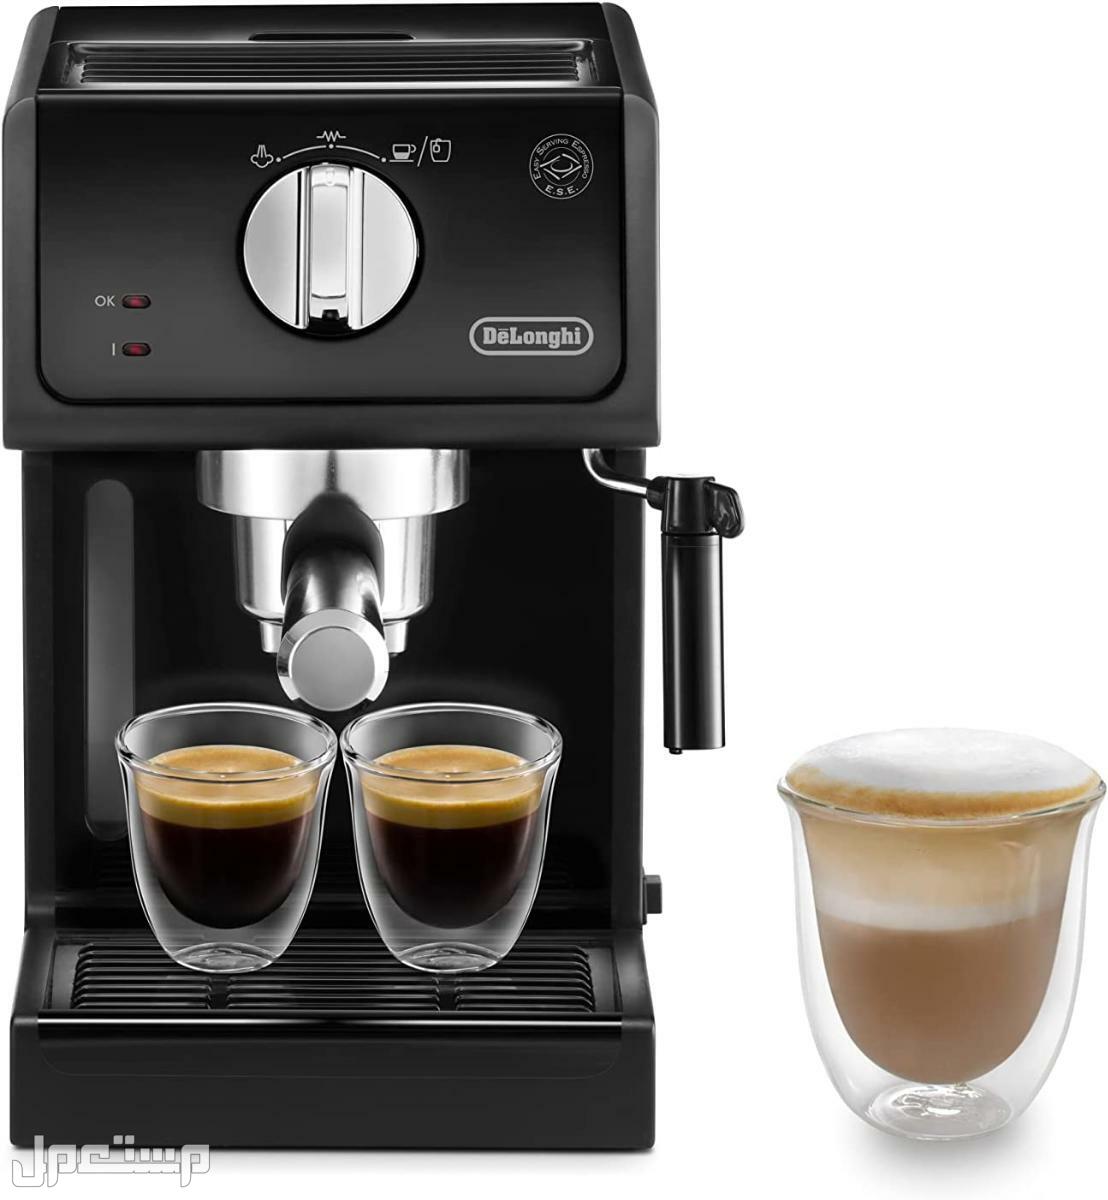 عيوب ومميزات ومواصفات وسعر ماكينة قهوة ديلونجى ديديكا في قطر لماذا عليك شراء ماكينة قهوة ديلونجي ديديكا ؟